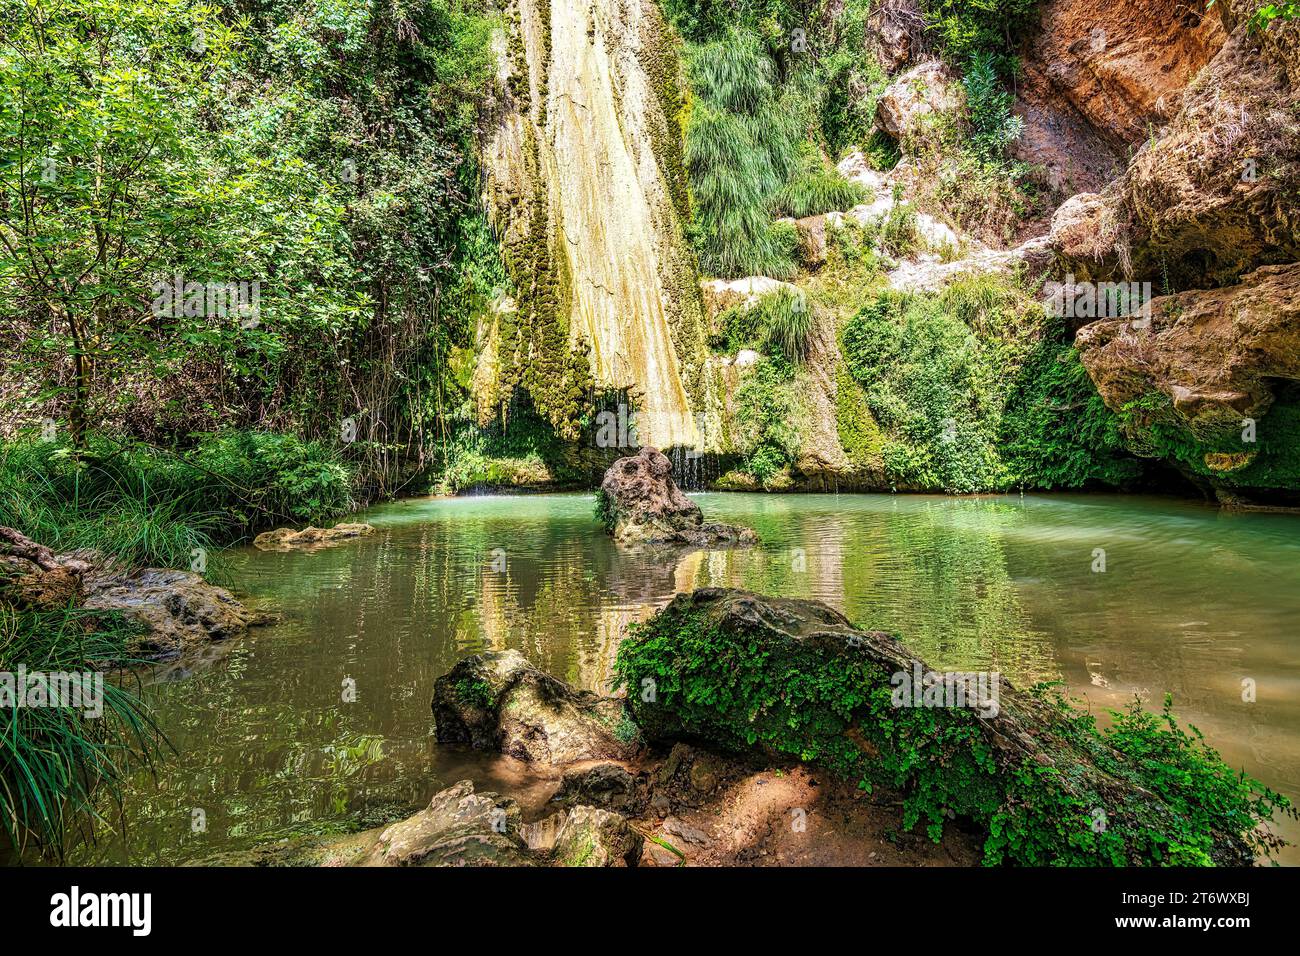 Wasserfall von Kalamaris, ein Naturschutzgebiet in Gialova, Präfektur Messinia, Peloponnes, Griechenland, Europa. Es ist ein kleines Feuchtgebiet mit vielen Amphibi Stockfoto